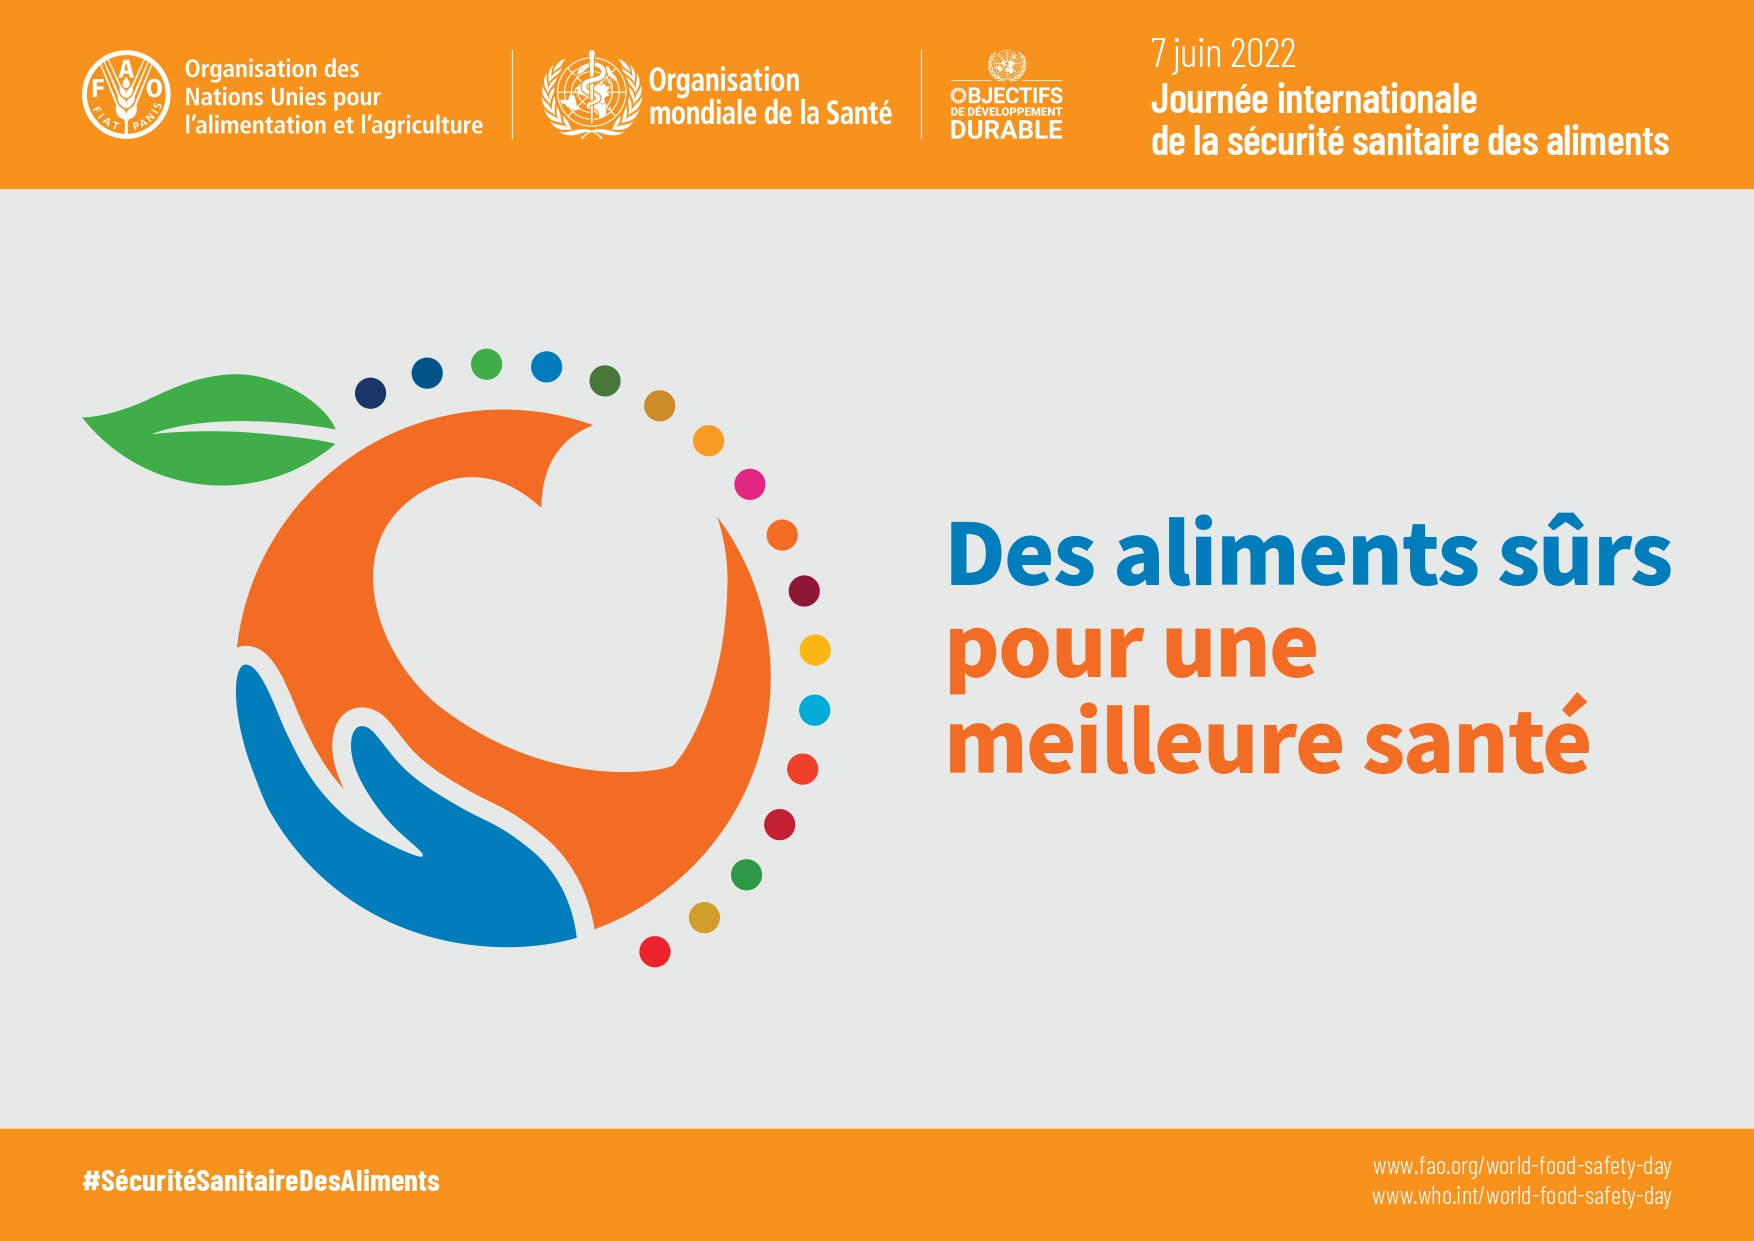 Journée Internationale de la Sécurité Sanitaire des Aliments - 07 Juin 2022